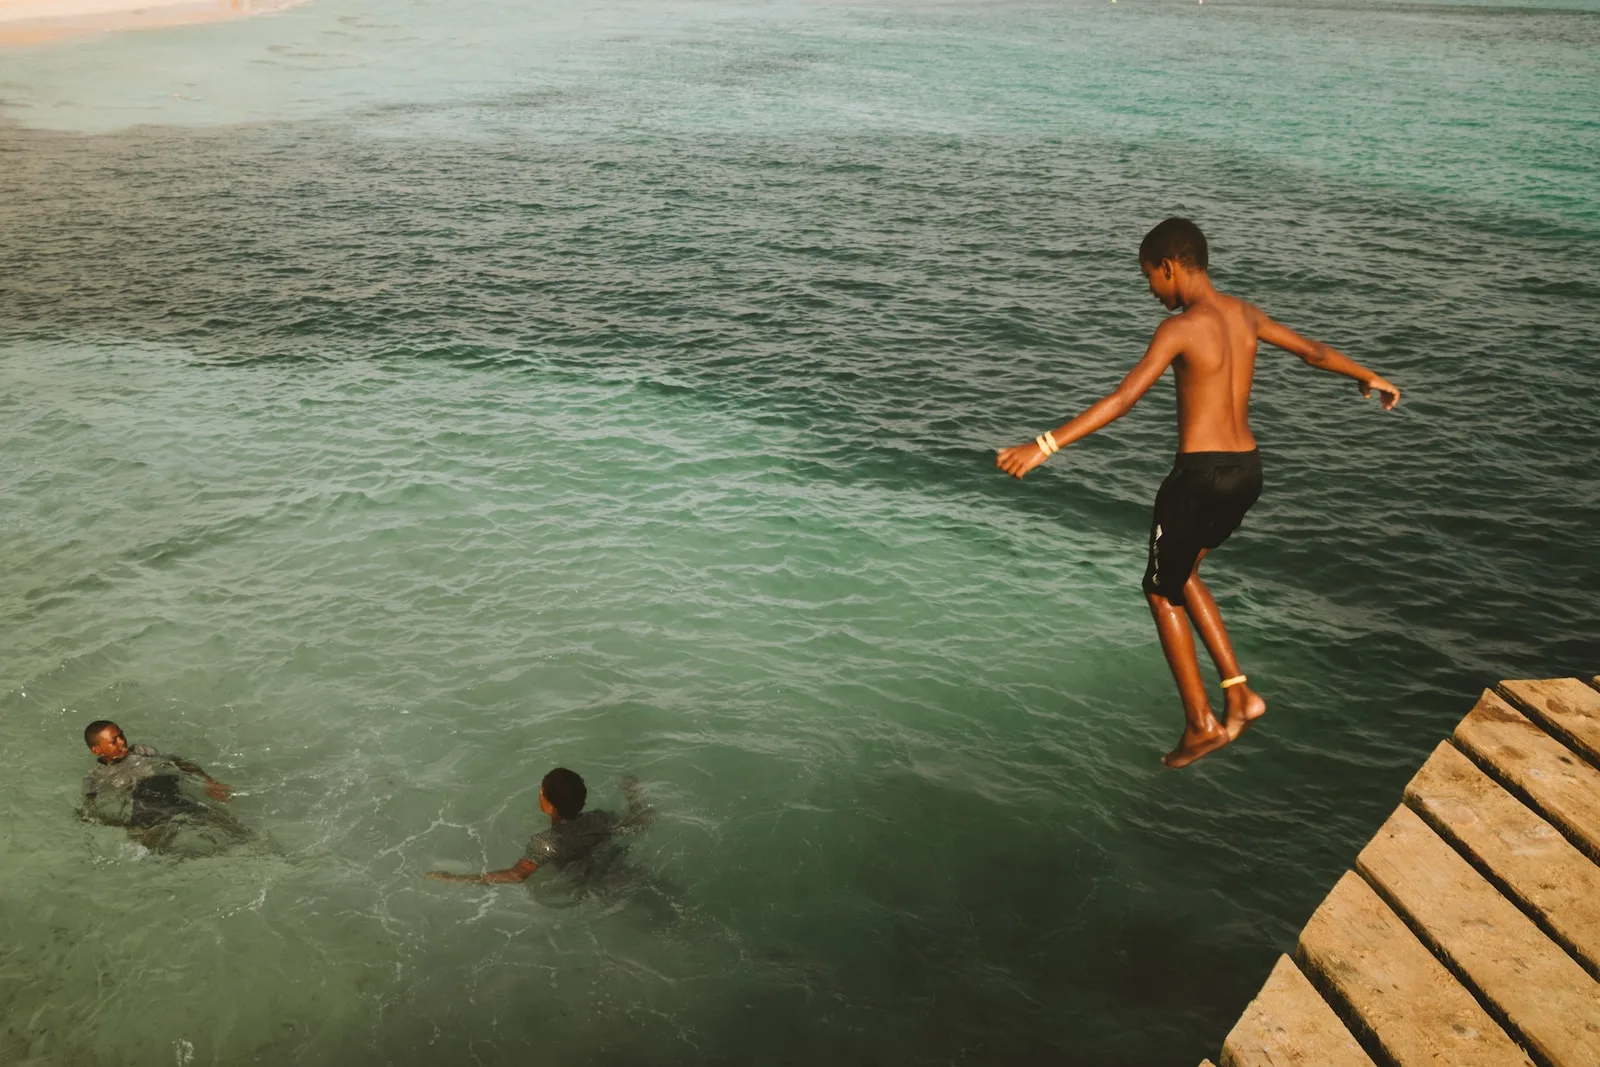 Una fotografia che cattura la gioia e la spensieratezza di un gruppo di ragazzi che si godono il bagno nelle acque turchesi di Mindelo, Capo Verde.